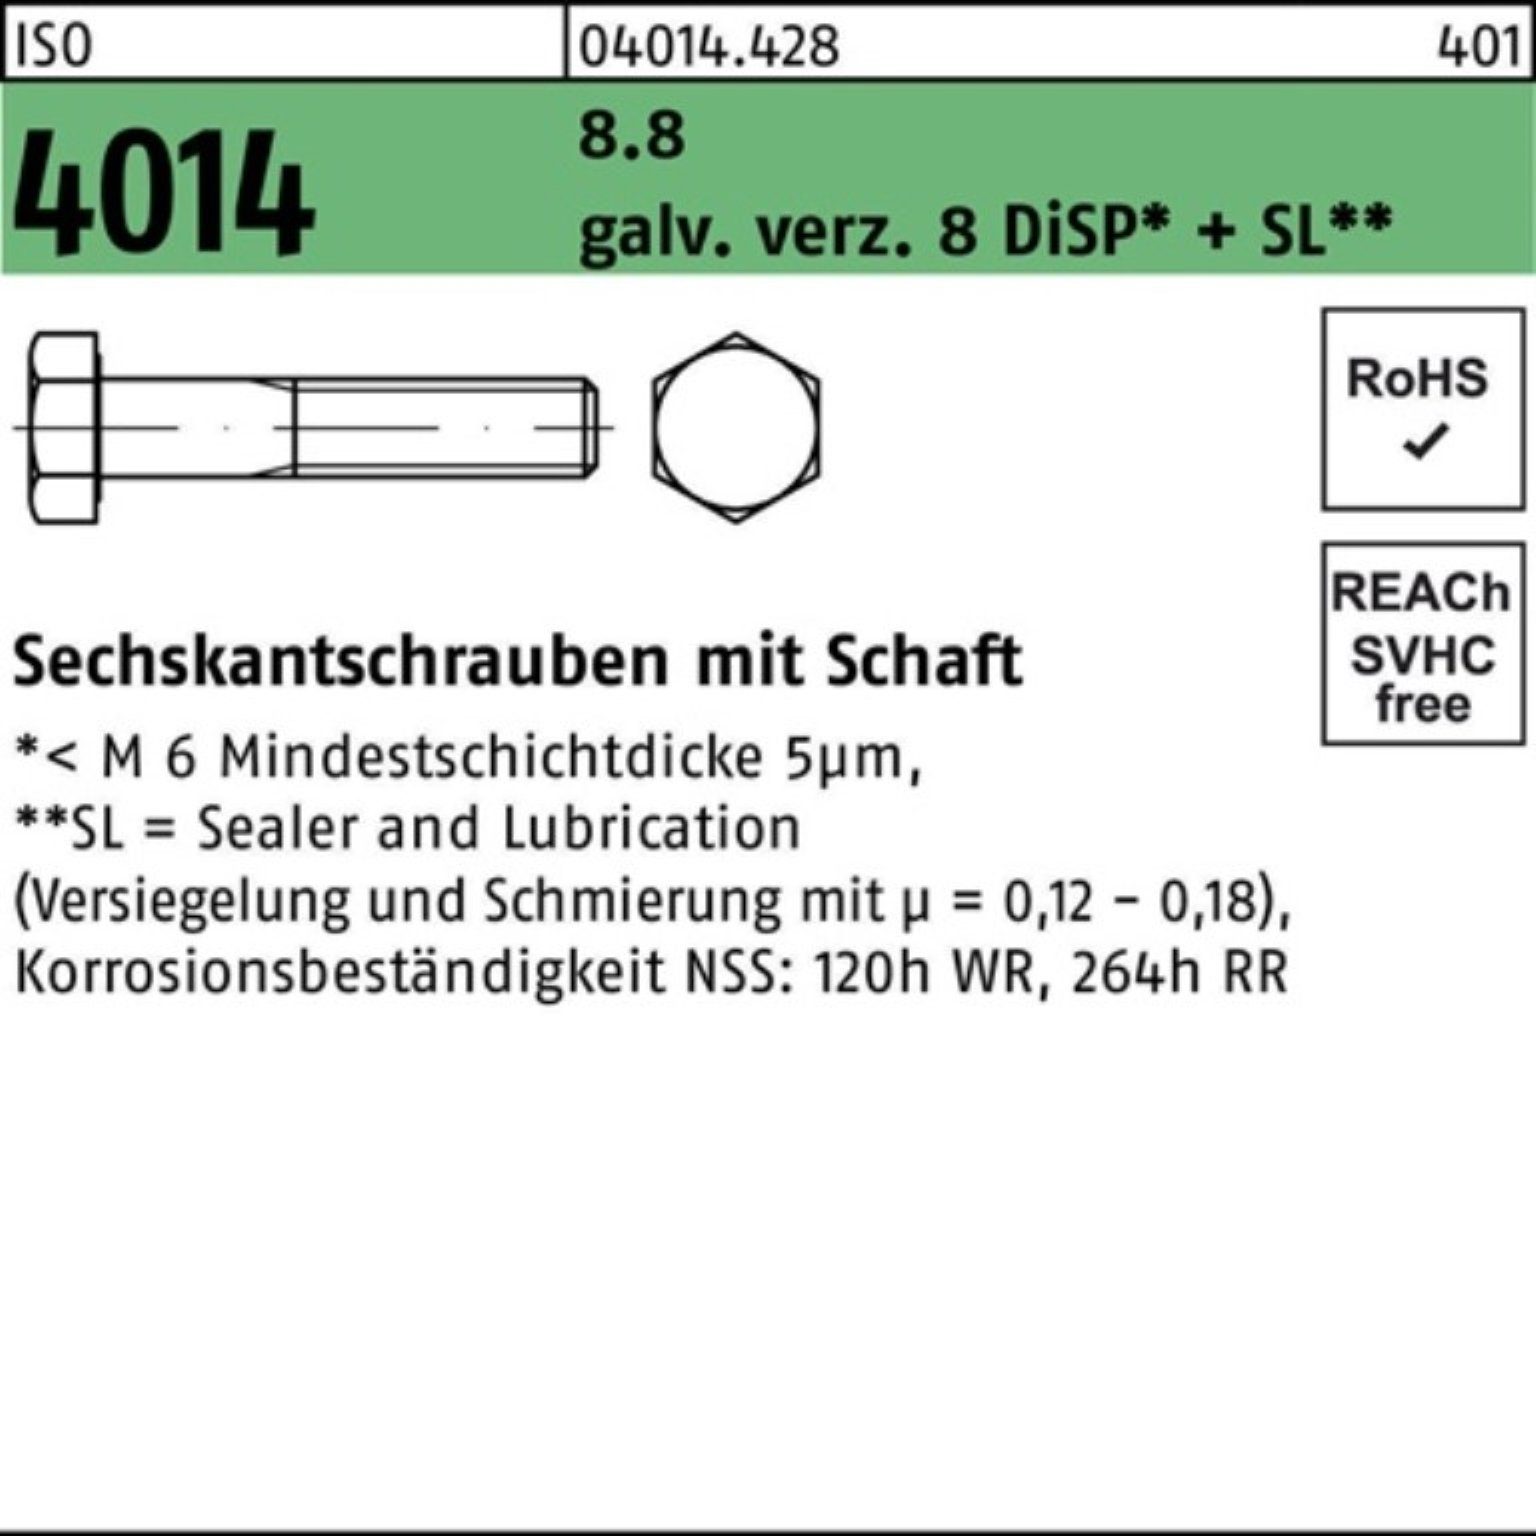 Bufab Sechskantschraube 100er Pack Sechskantschraube ISO 4014 Schaft M14x150 8.8 galv.verz. 8